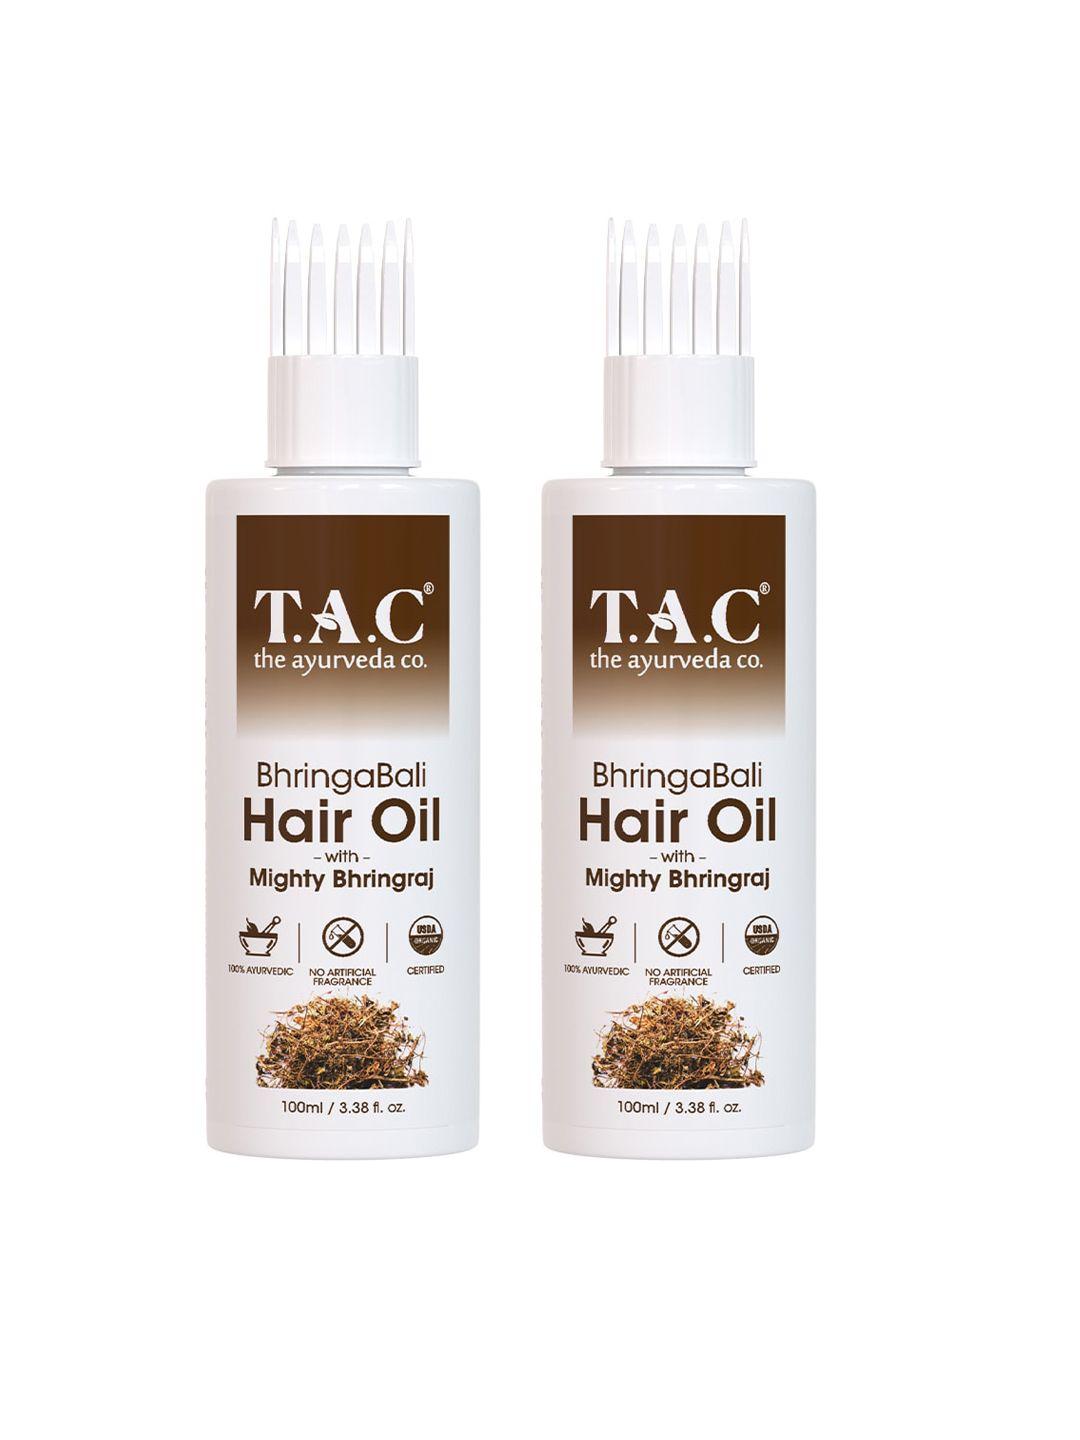 tac - the ayurveda co. set of 2 bhringabali hair oil with amla for hair growth- 100ml each